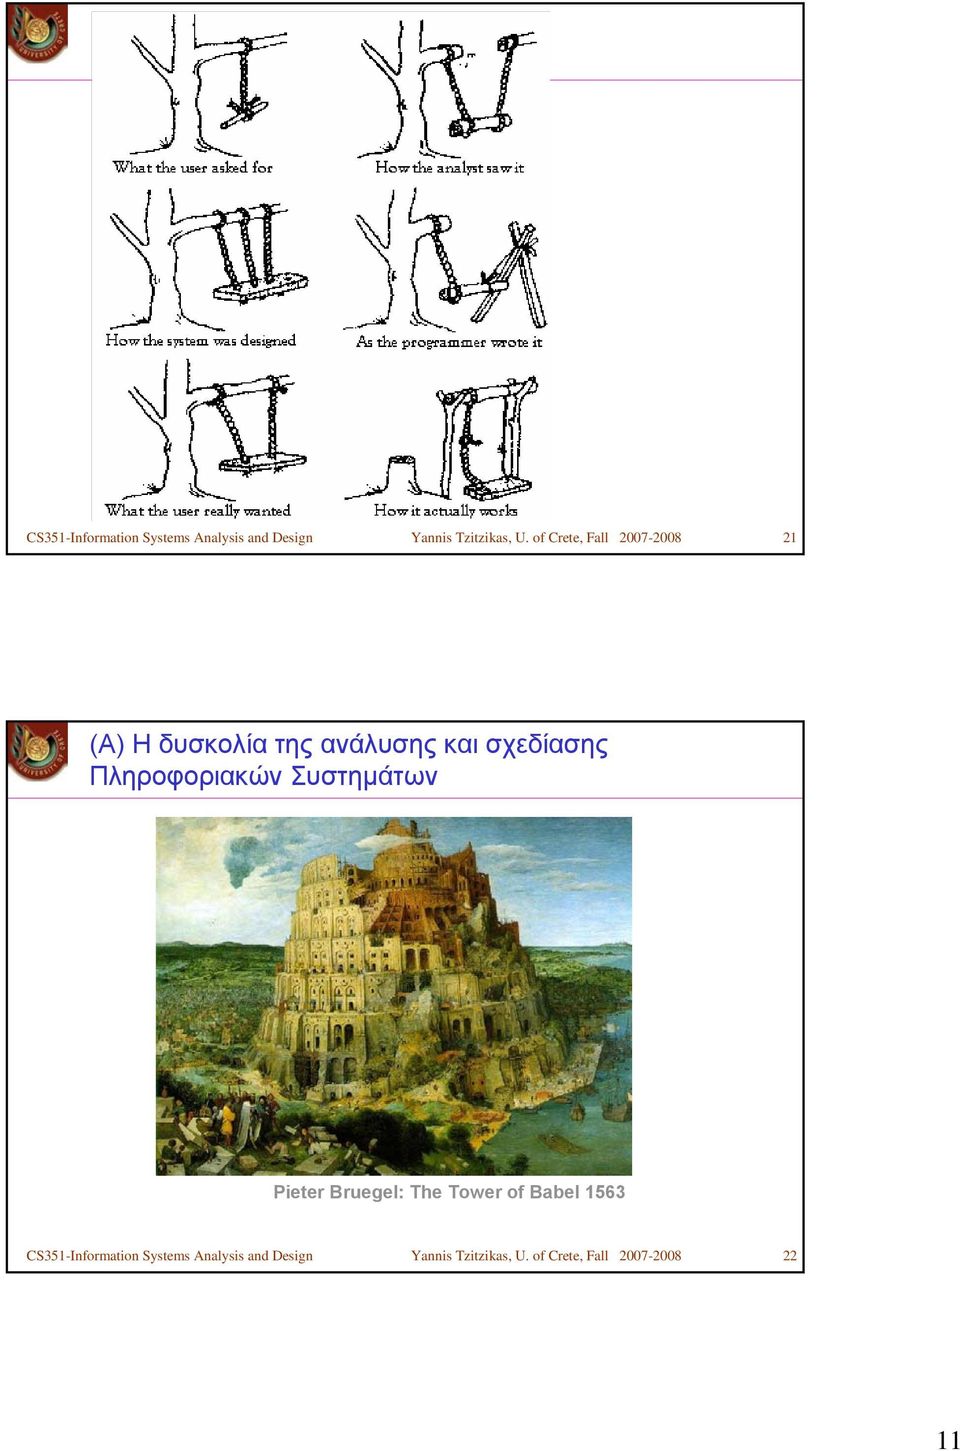 Πληροφοριακών Συστημάτων Pieter Bruegel: The Tower of Babel 1563  of